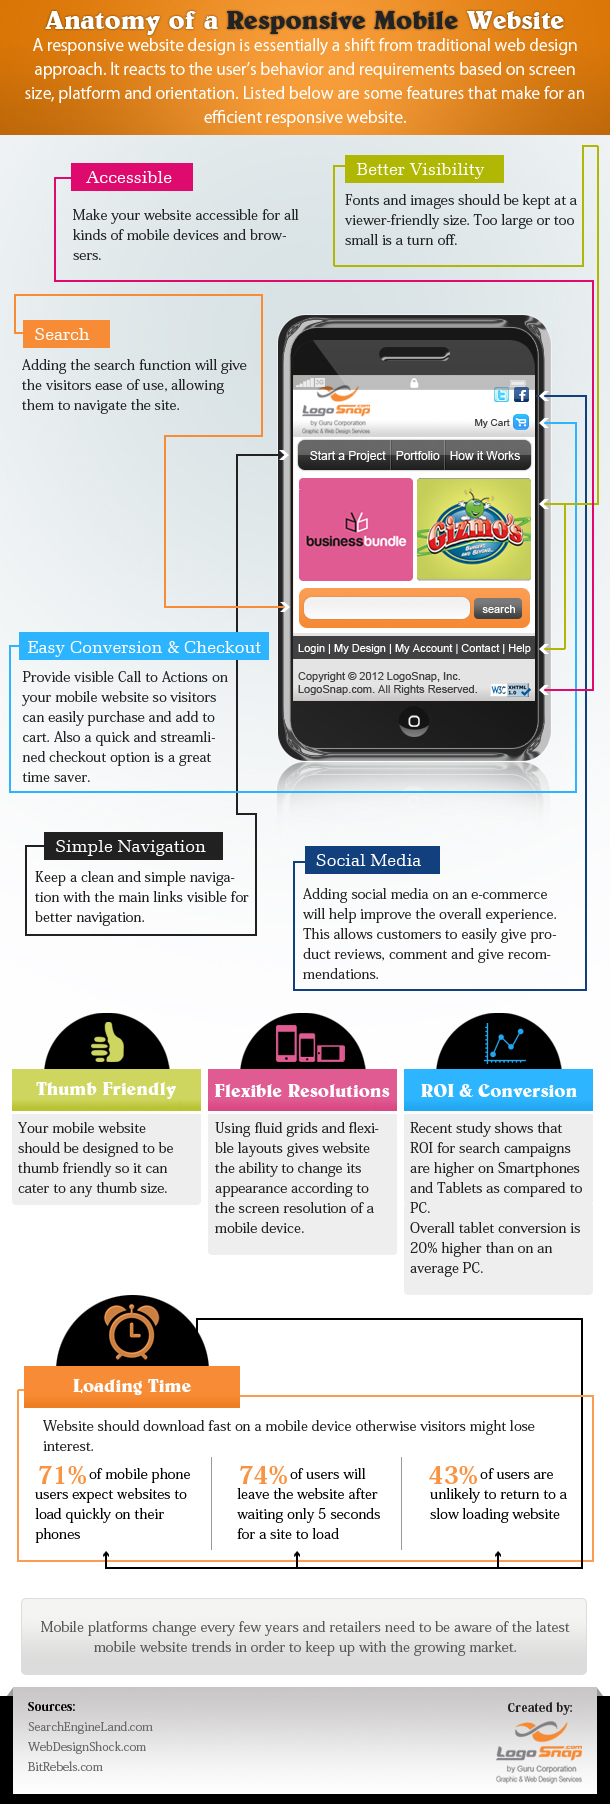 10 Keys to a Responsive Mobile Website Framework and Navigation